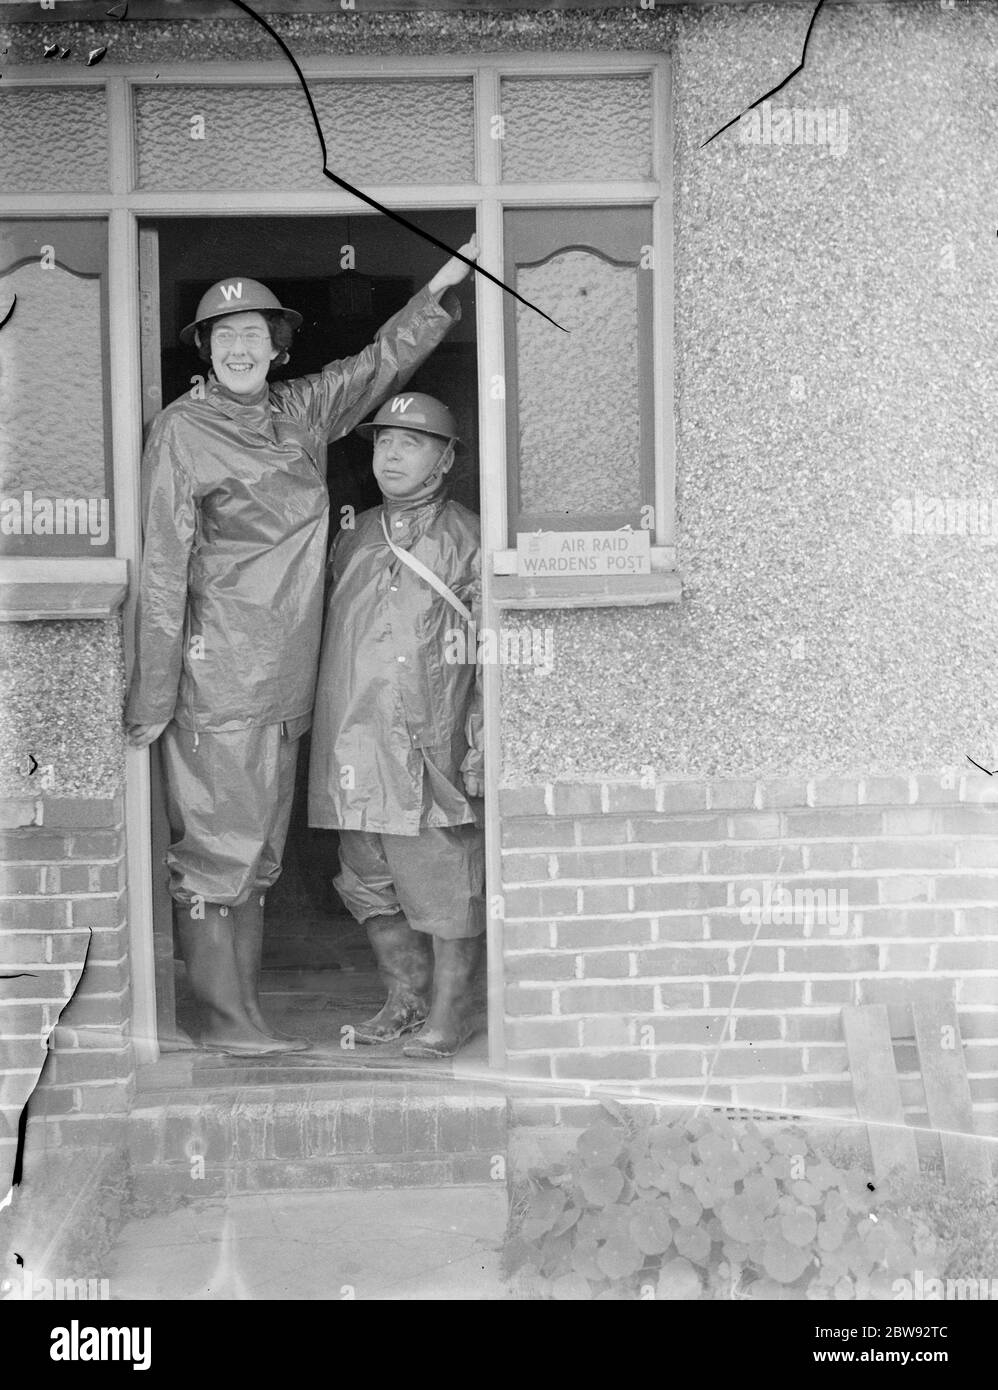 Die höchste Frau Luftangriffswarden, Miss B Allnutt, posiert in einer Tür mit Kollegen Warden, Herr G A Boys. Sie steht bei 6ft 2ins . 1939 Stockfoto